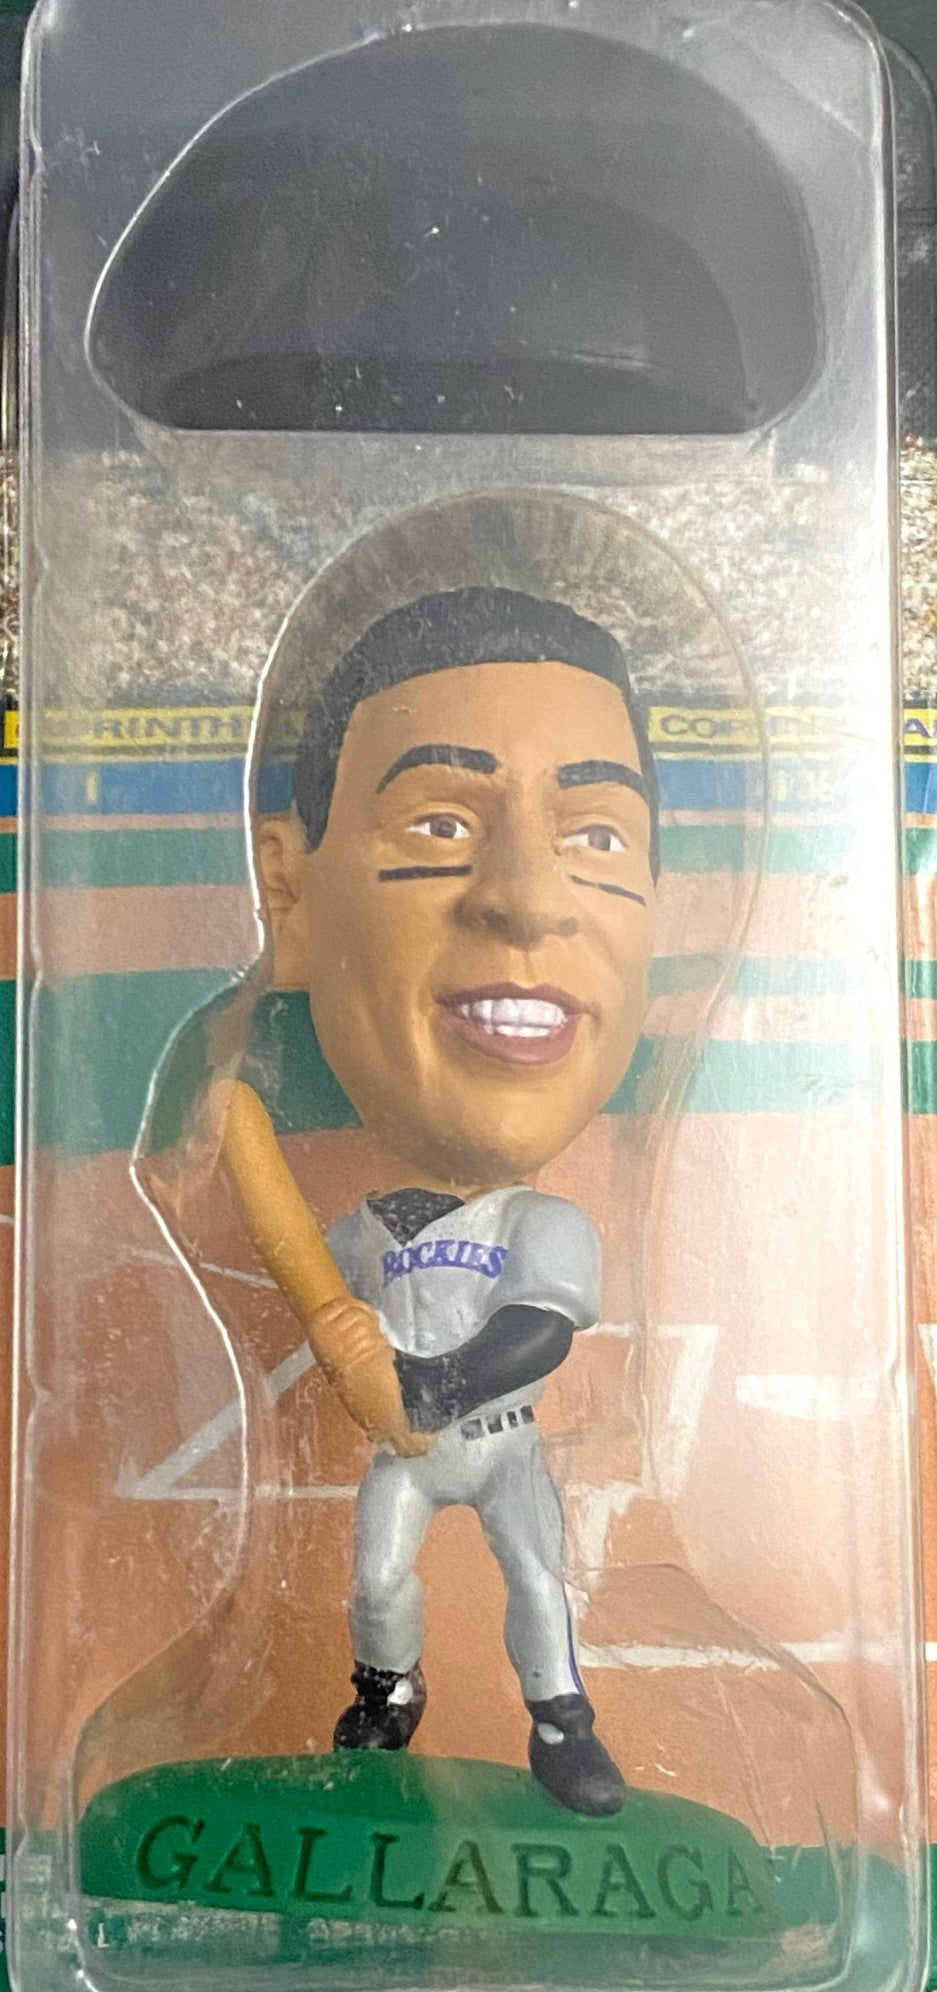 Andres Galarraga 1996 MLB Colorado Rockies Headliner Figurine by Corinthian